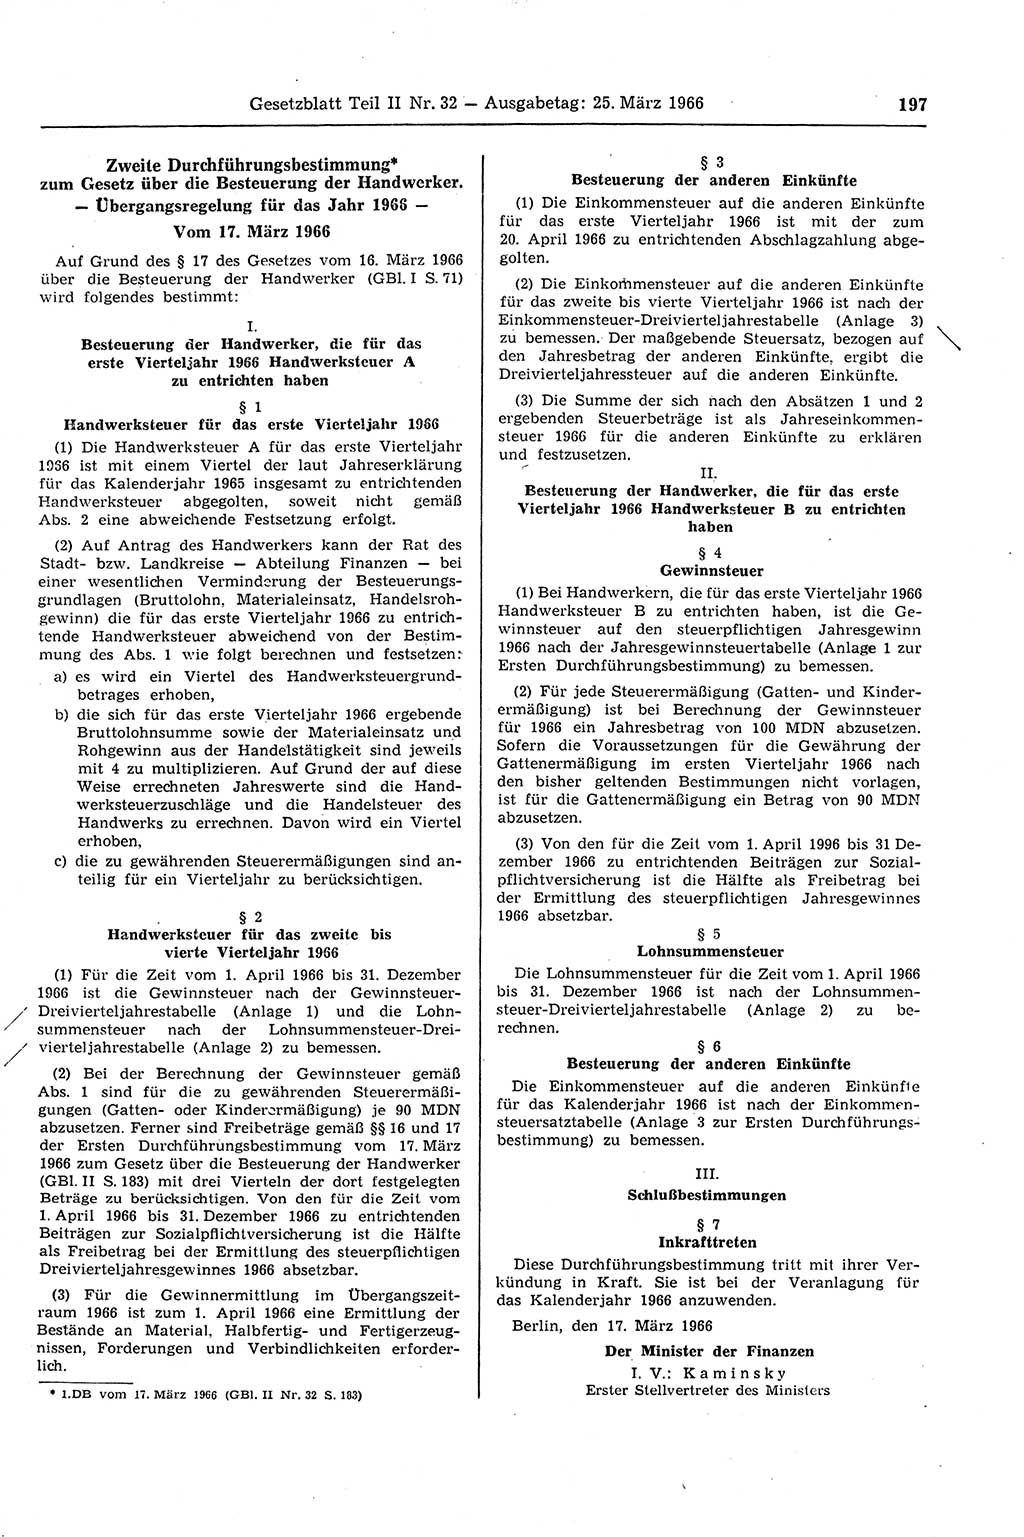 Gesetzblatt (GBl.) der Deutschen Demokratischen Republik (DDR) Teil ⅠⅠ 1966, Seite 197 (GBl. DDR ⅠⅠ 1966, S. 197)